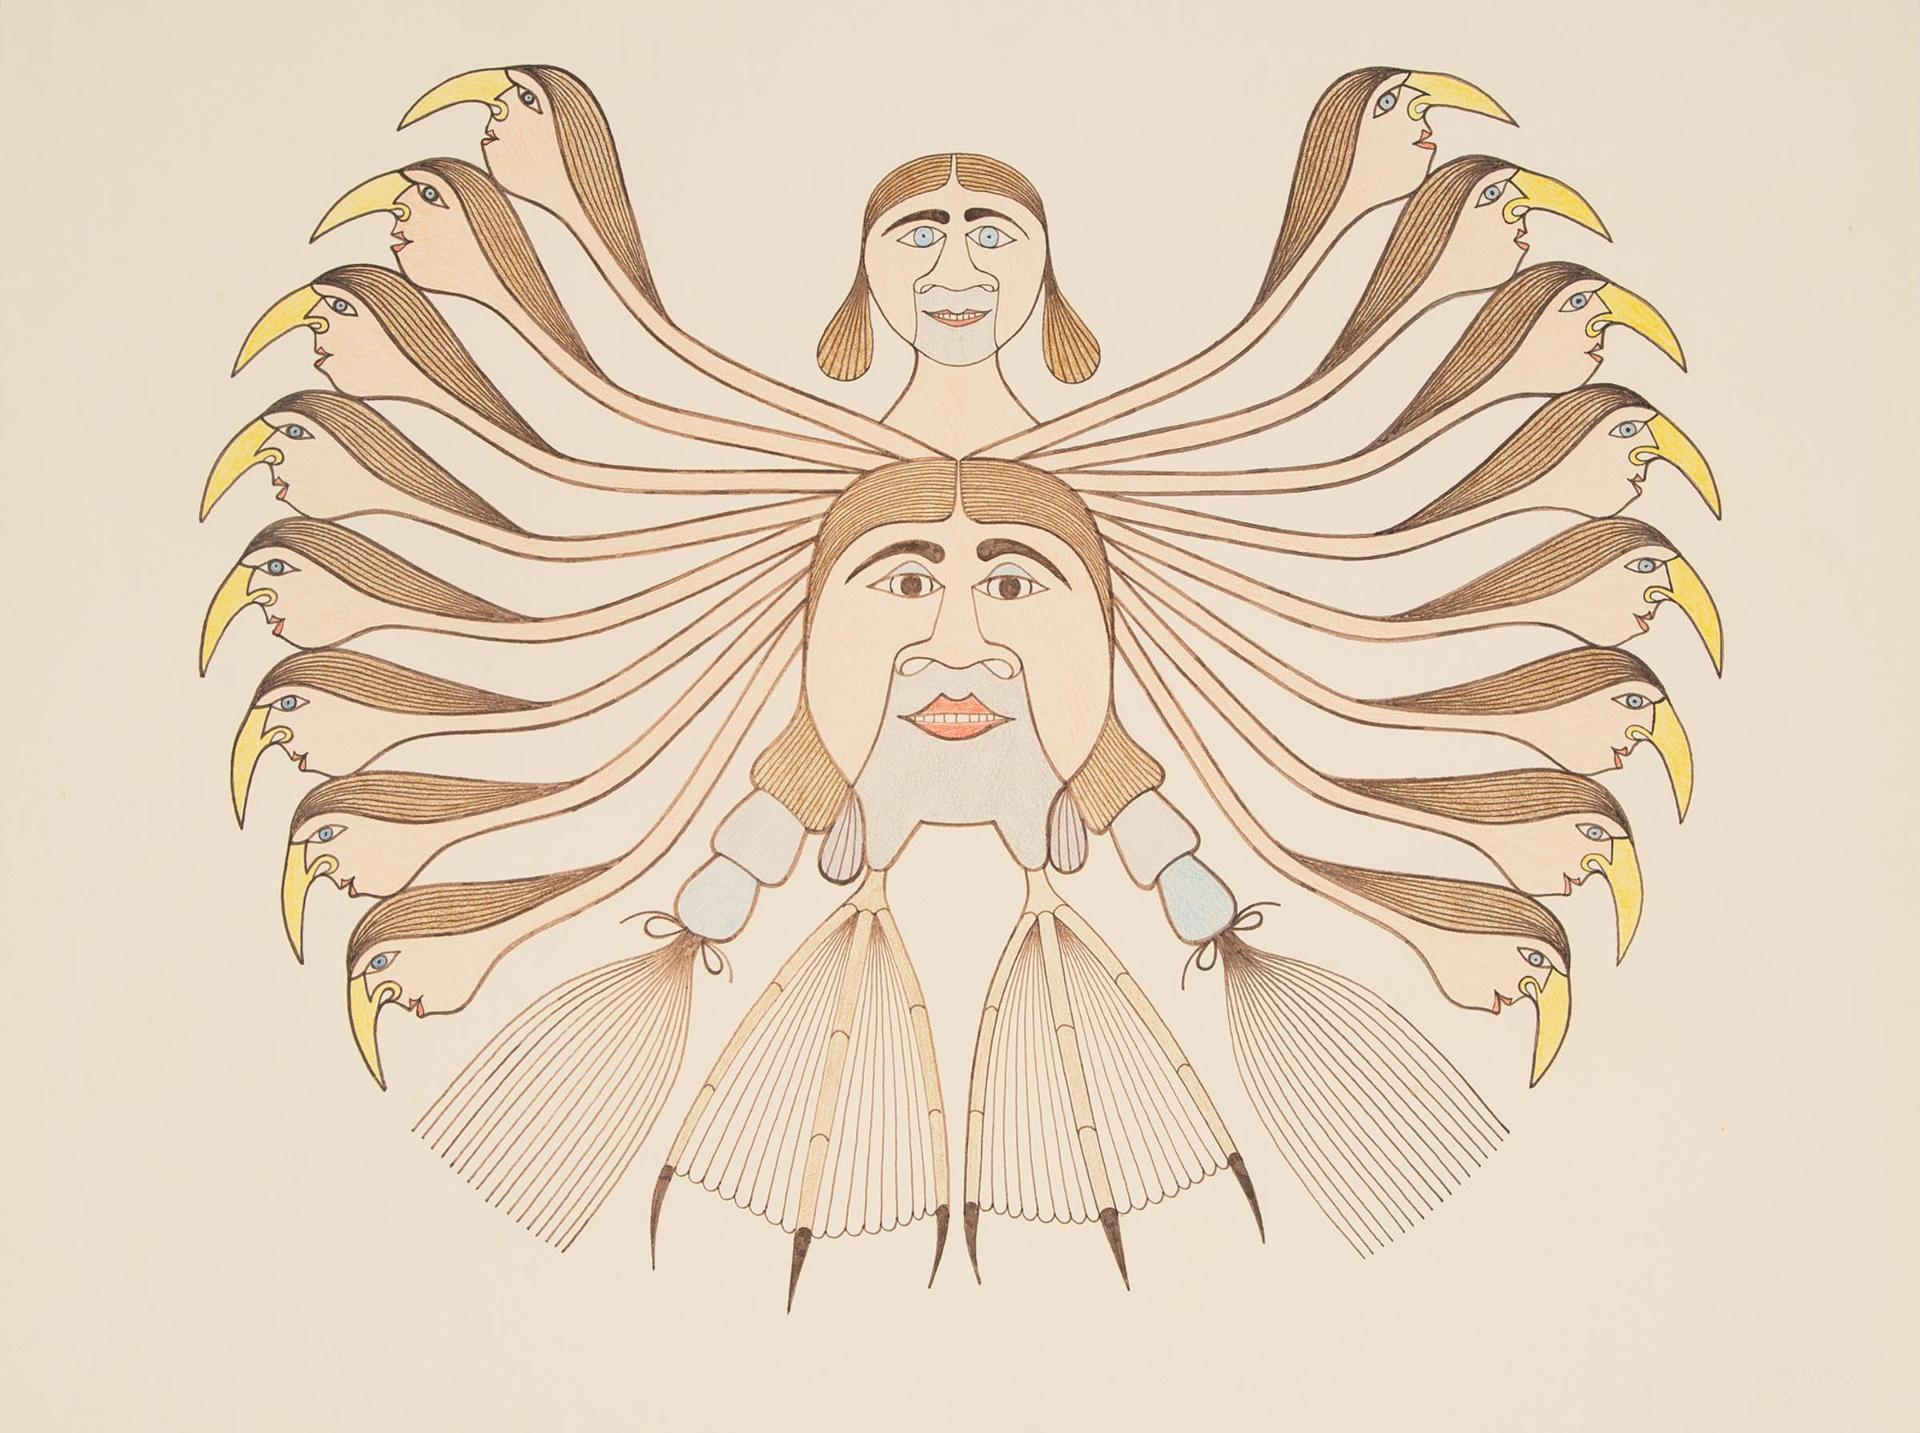 Eliyakota Samualie (1939-1987) - Human/Owl Transformation